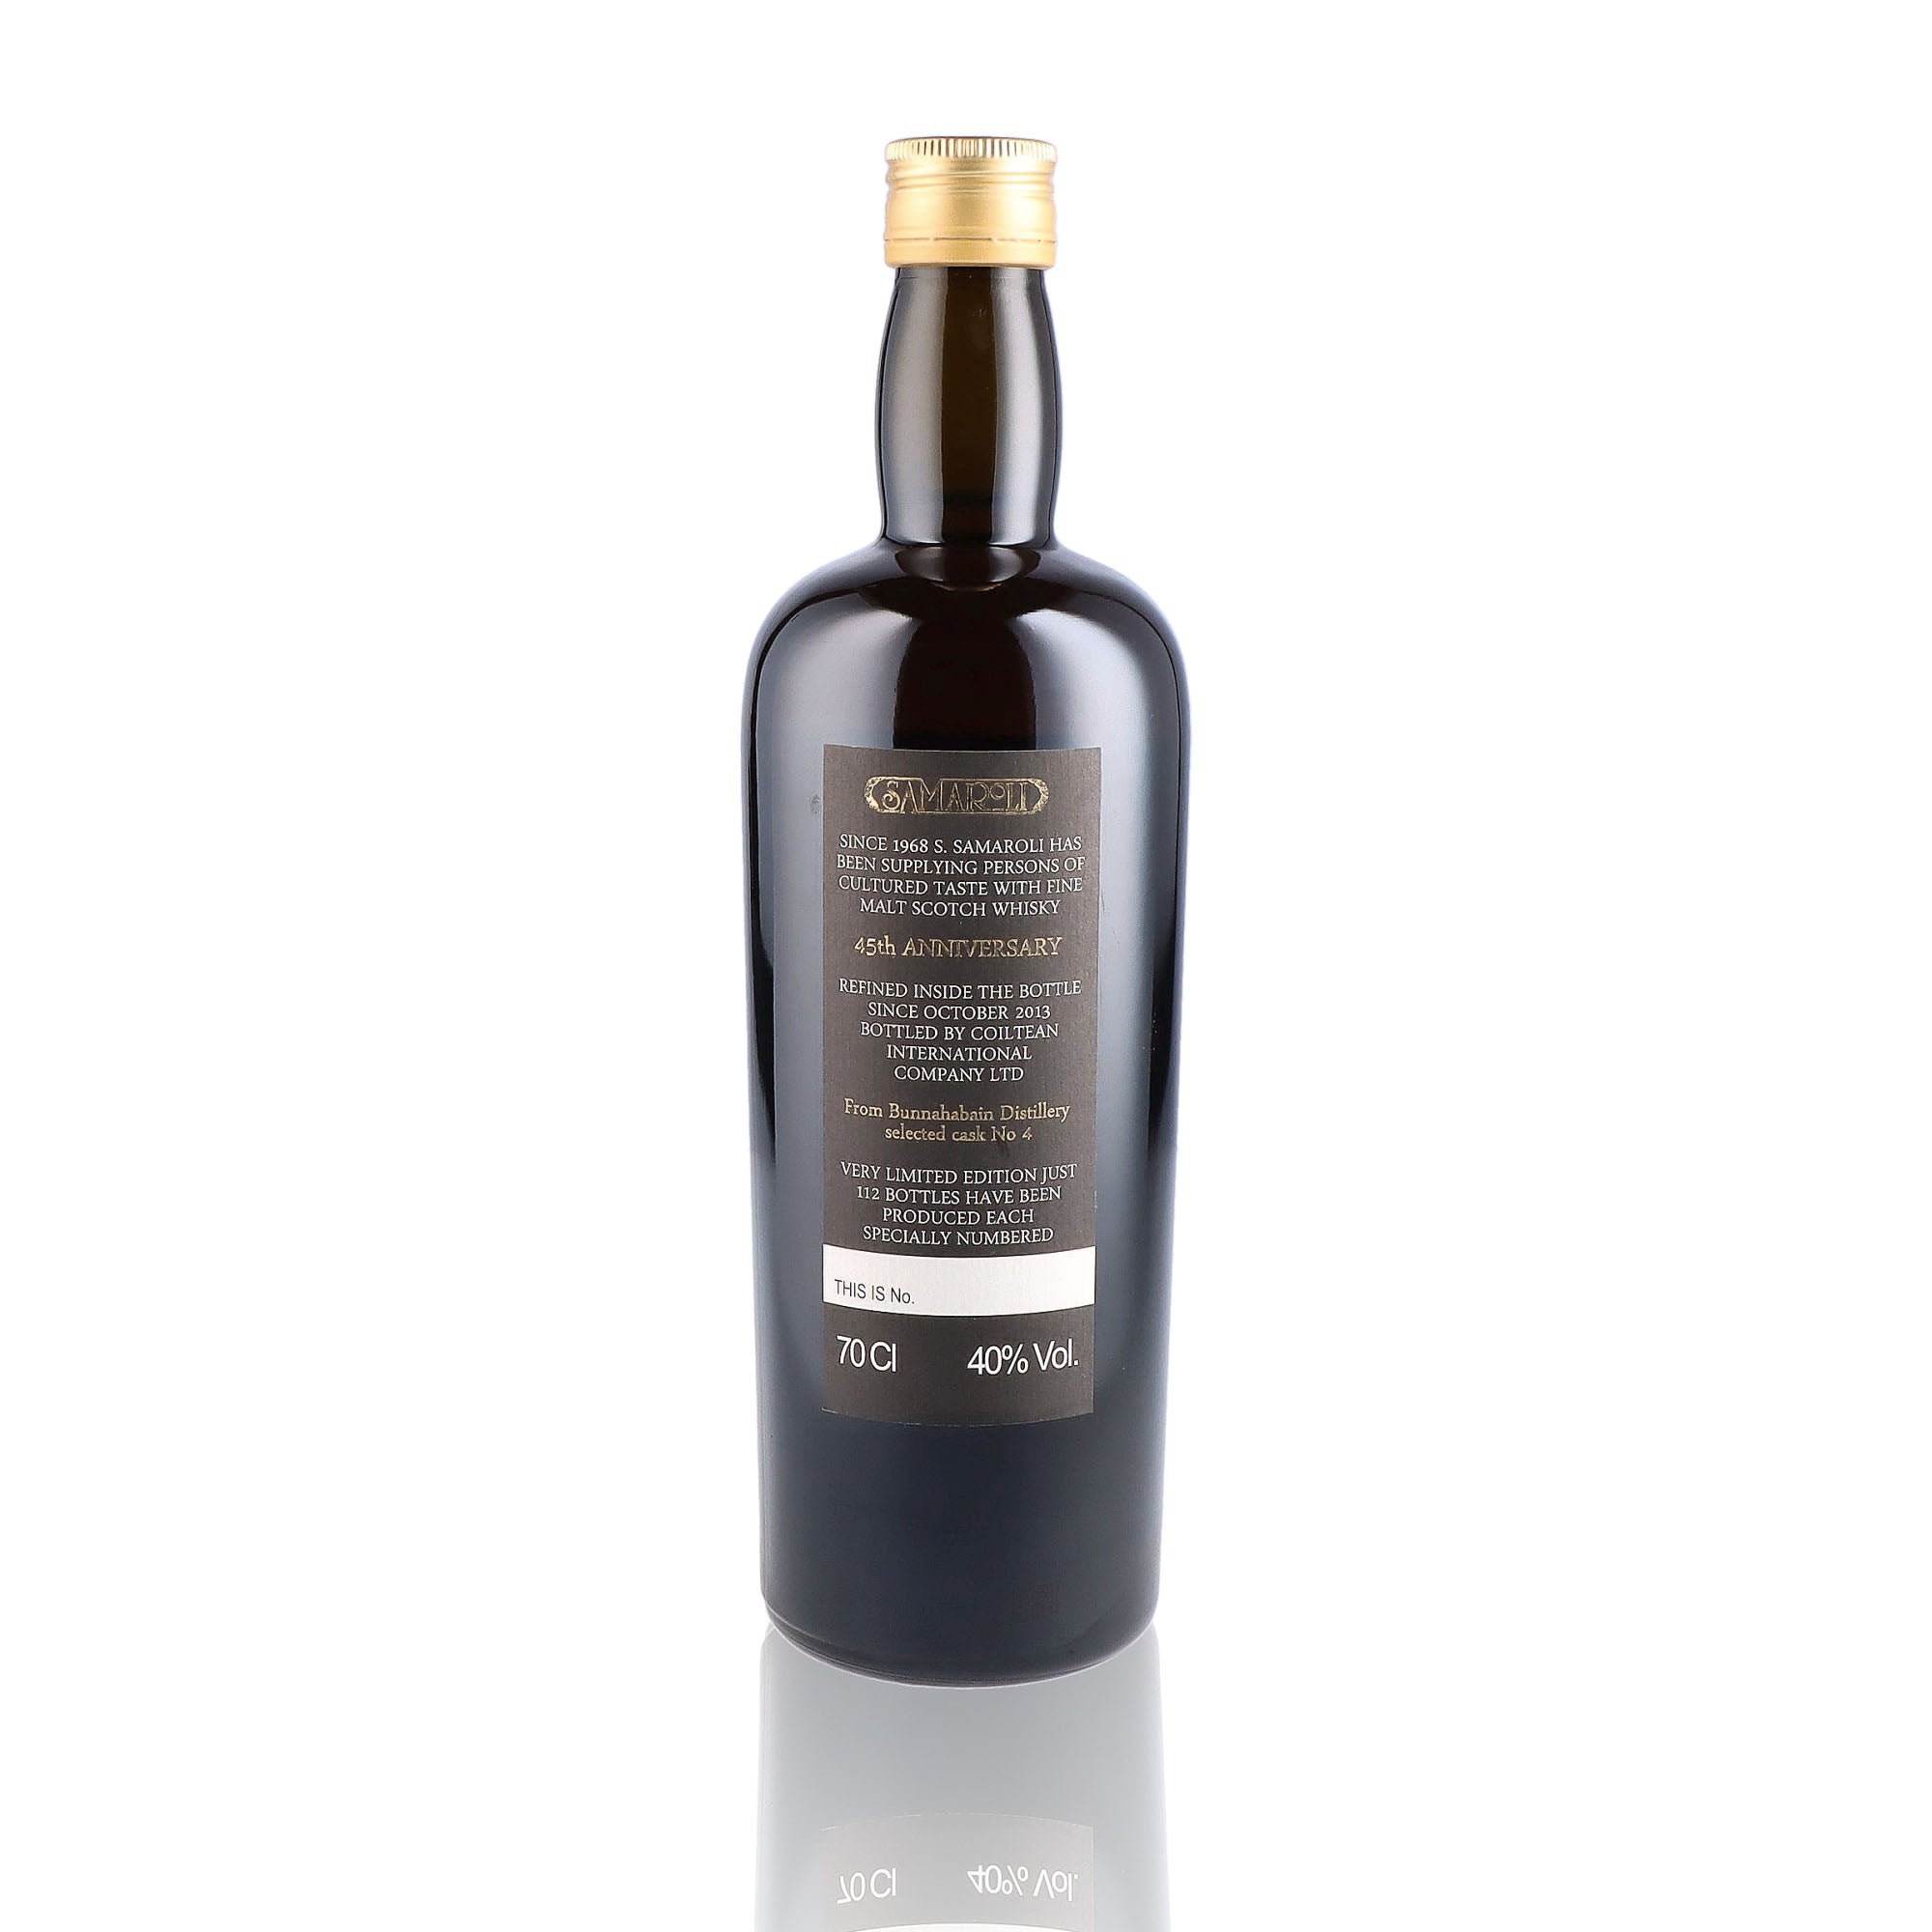 Une bouteille de Scotch Whisky Tourbé de la marque Bunnahabhain, nommée 45th Anniversary Silvano Samaroli, du millésime 1968.